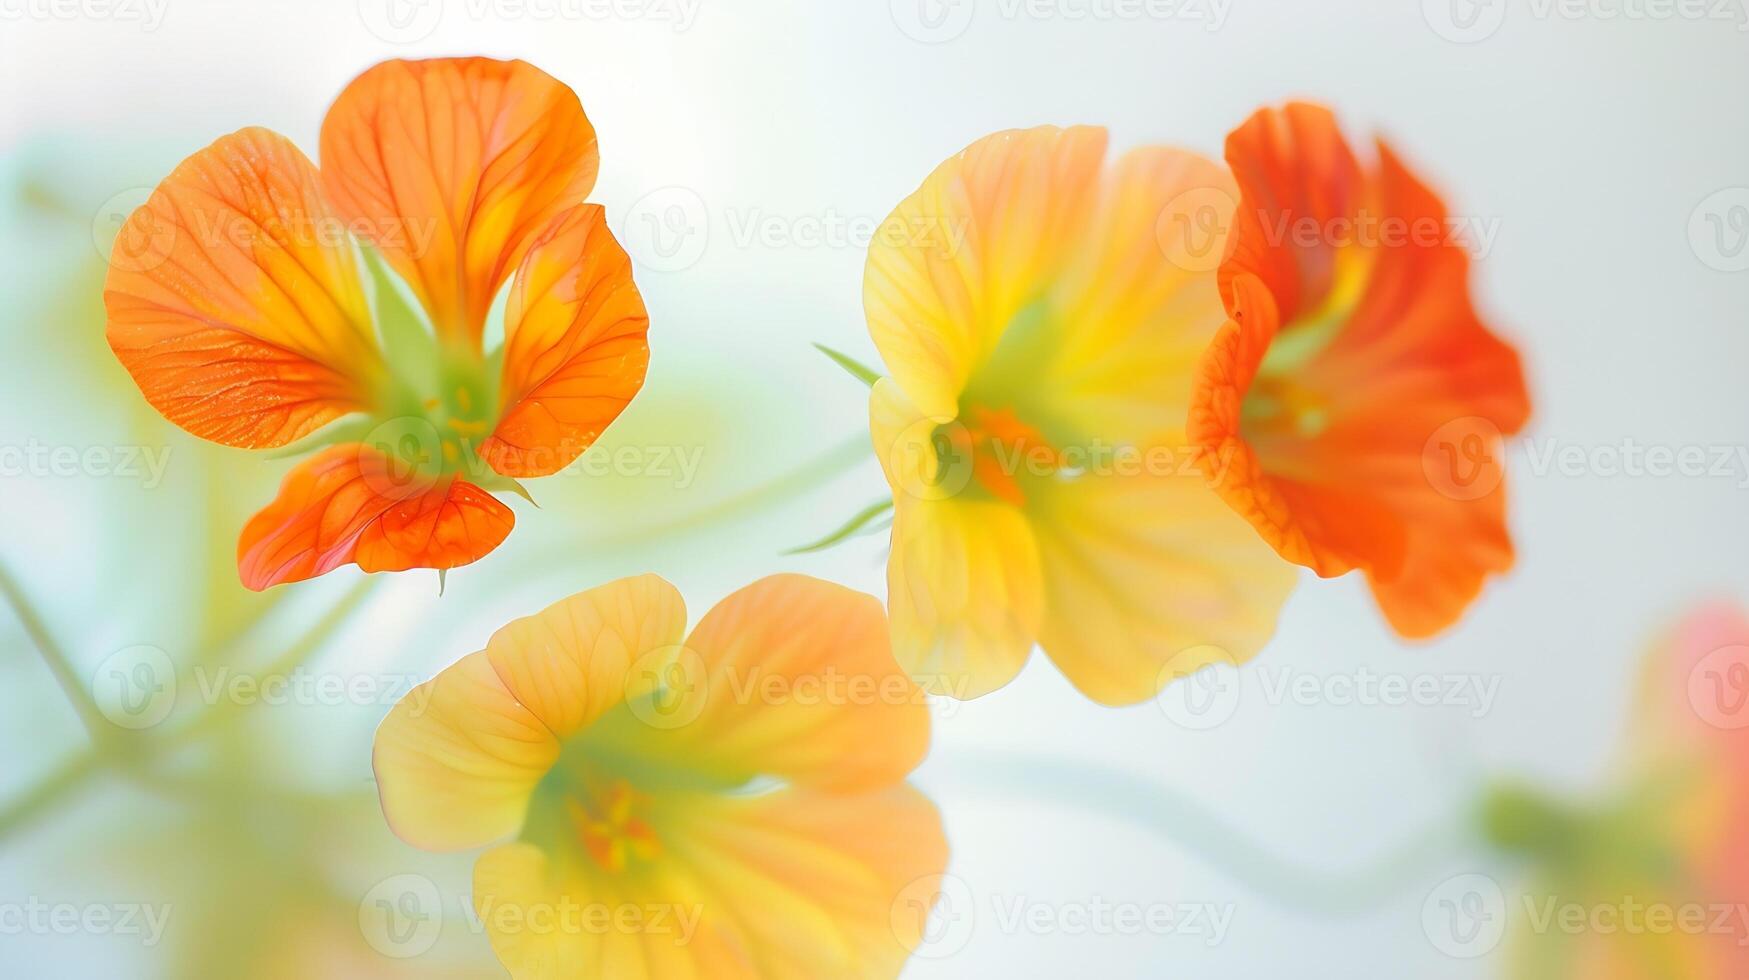 kleurrijk bloem vervaagt schilderachtig effect van Oostindische kers, foto